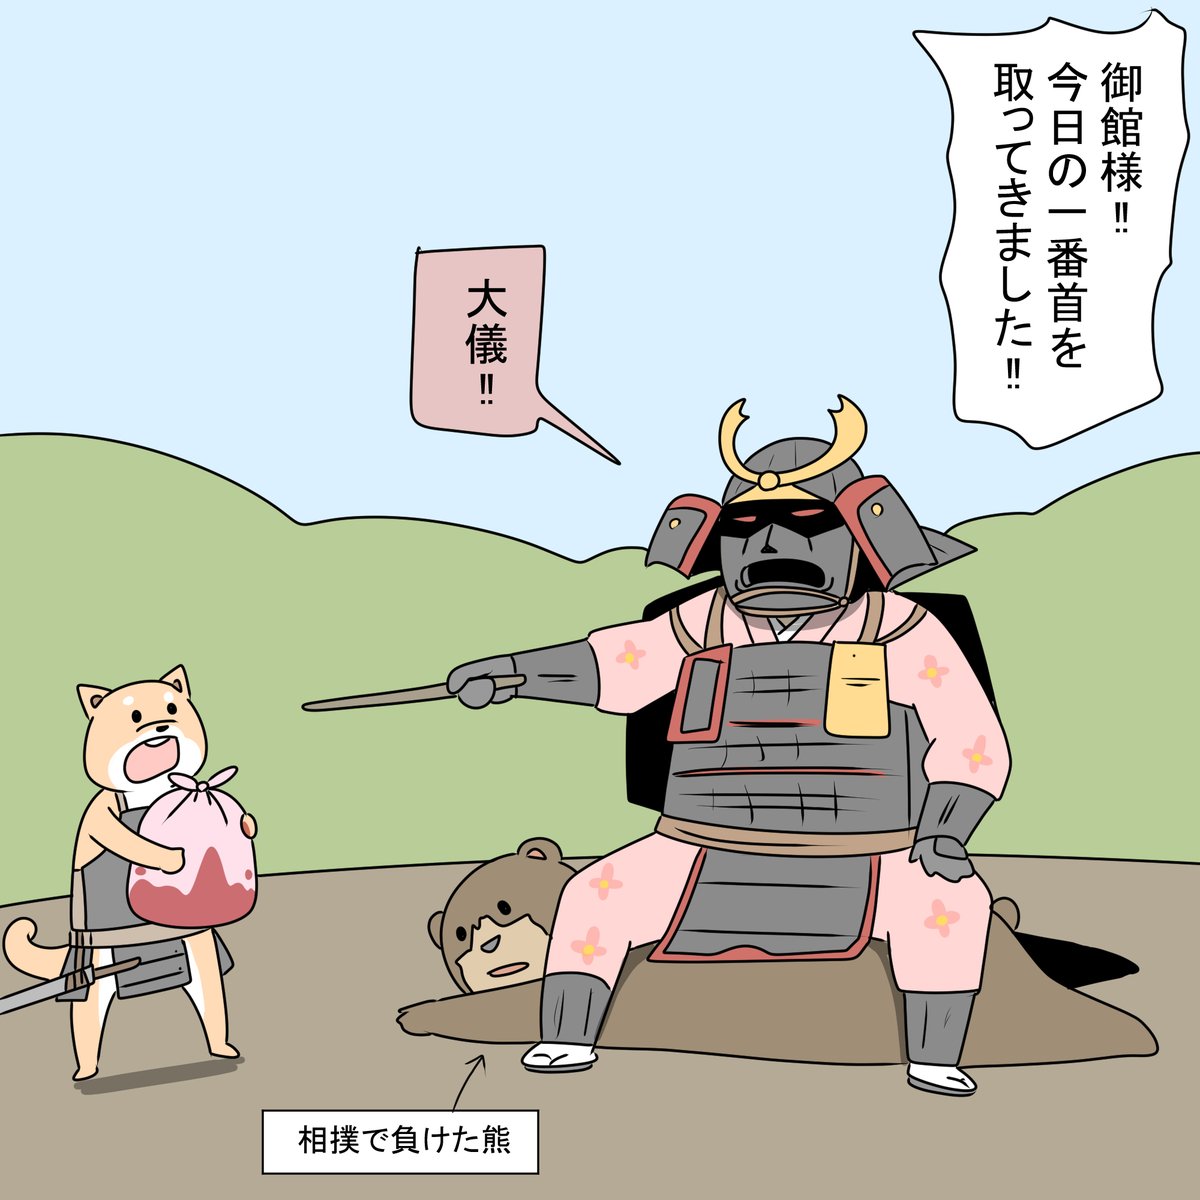 鎌倉武者に集落を乗っ取られた獣人たちは新たな制度を受け入れて生きていく